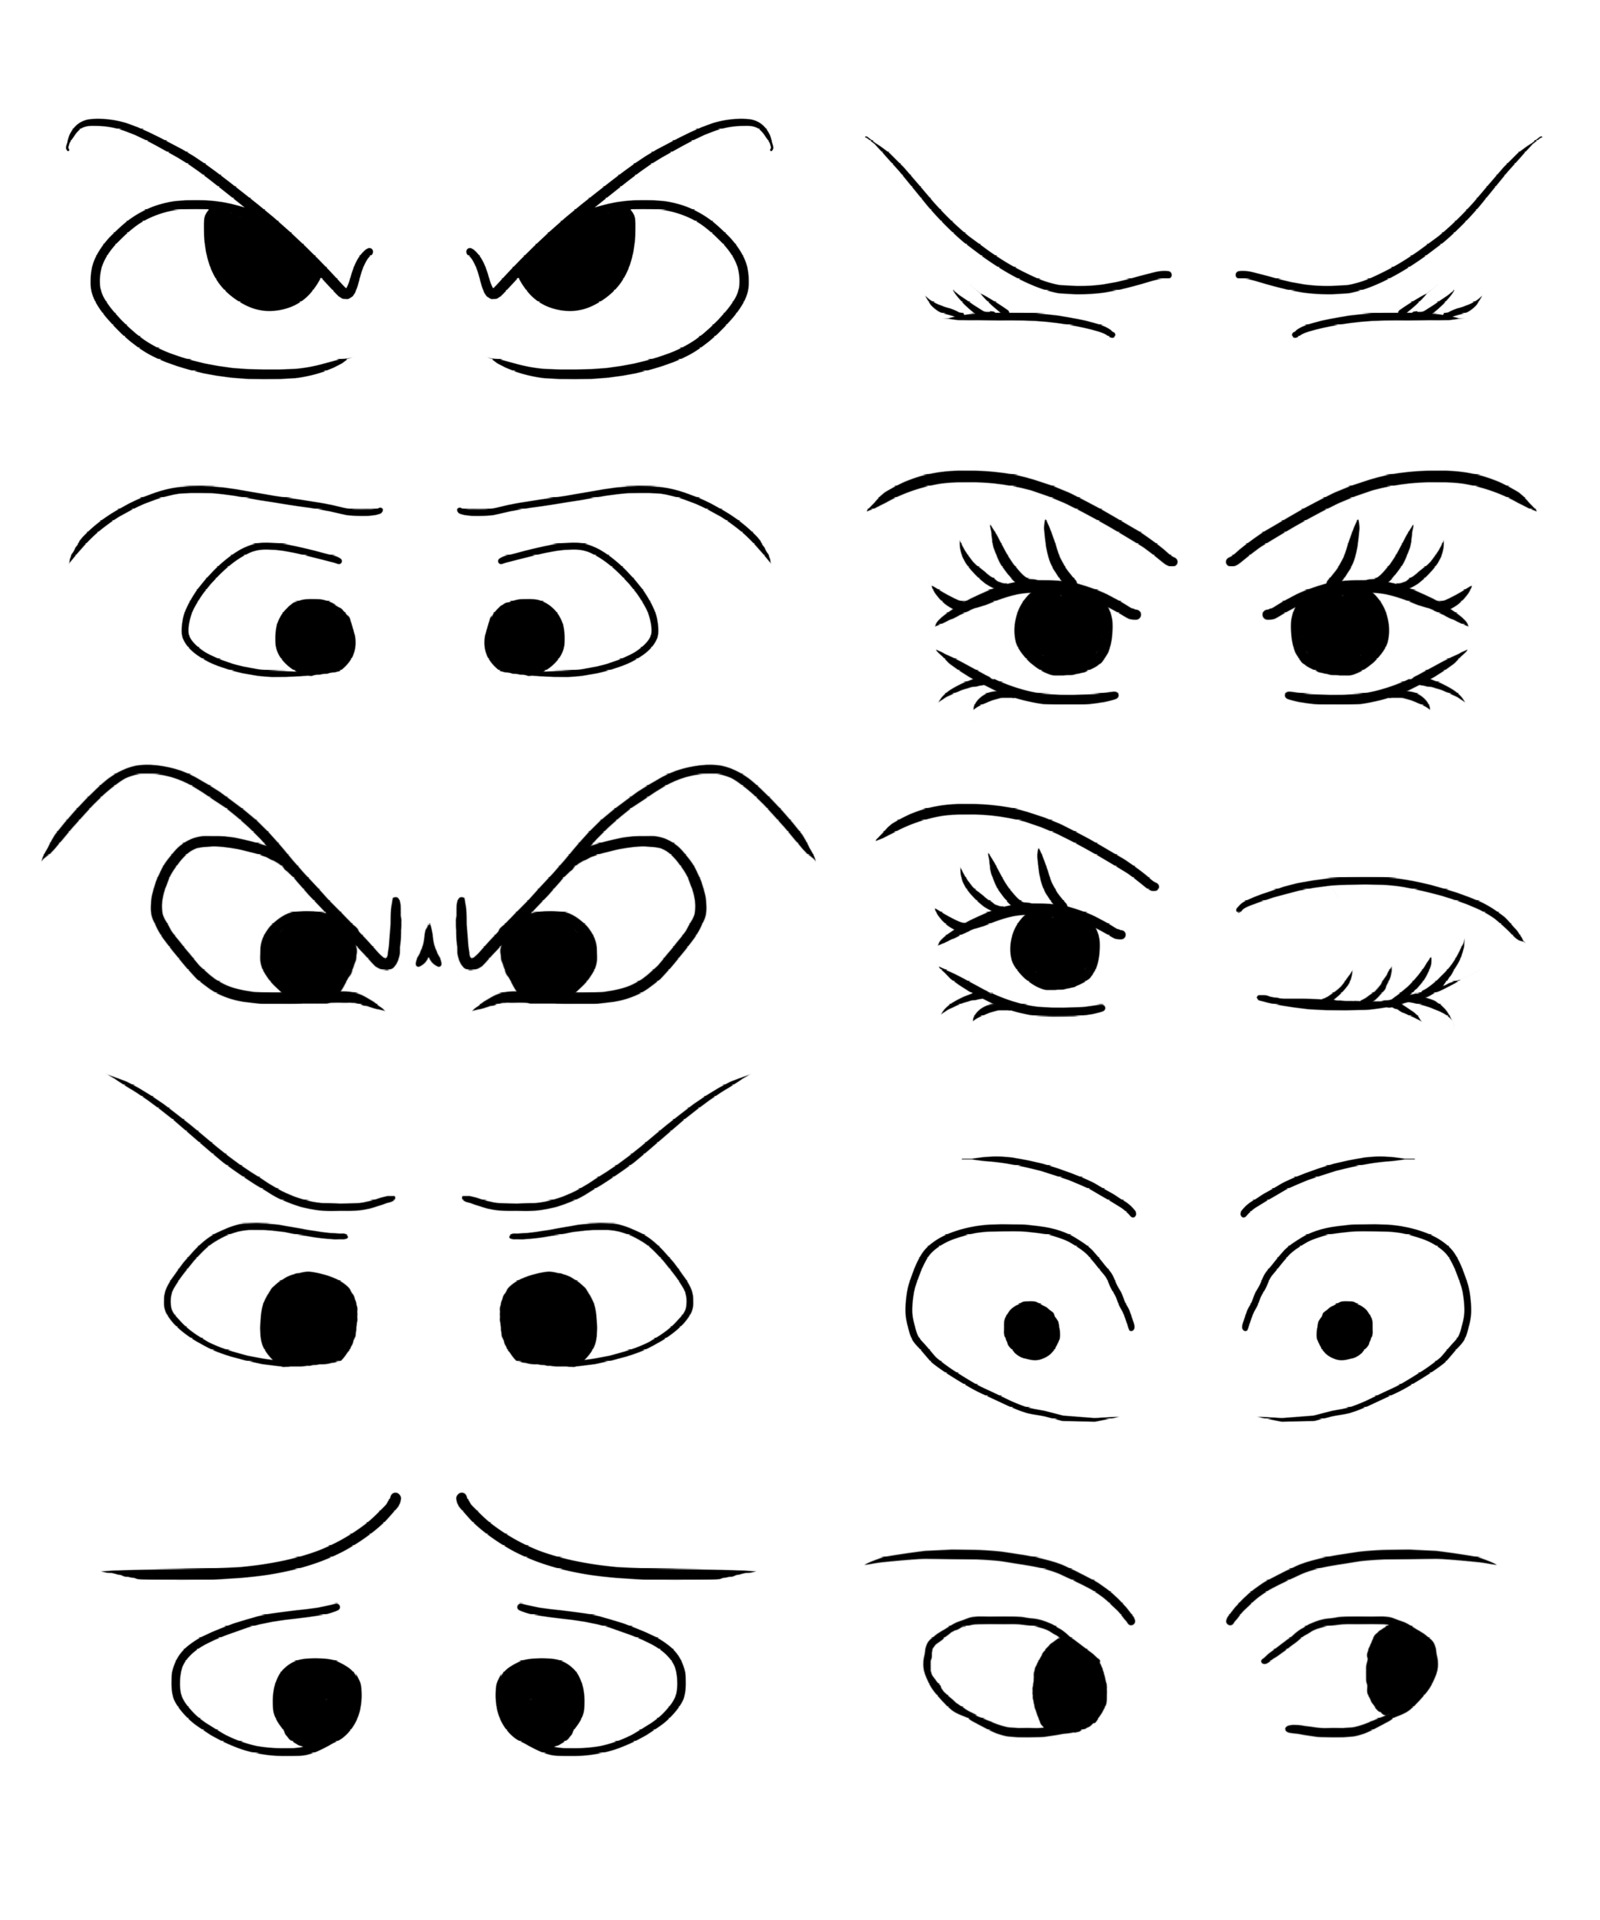 Vamos desenhar diferentes formas de olhos para personalizar o